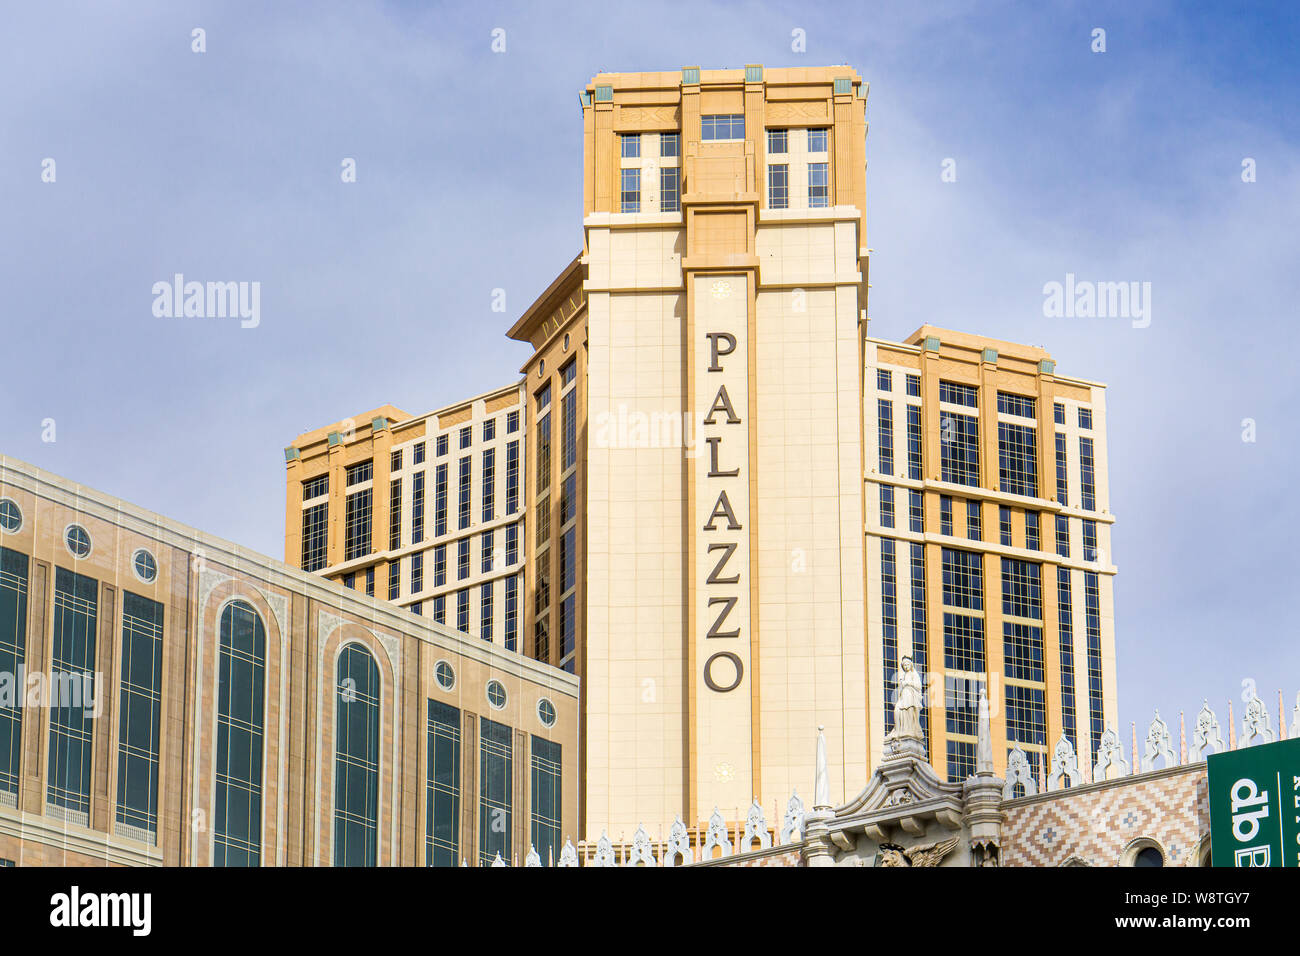 LAS VEGAS, NV/USA - Le 14 février 2016 : Le Palazzo Hotel and Casino sur le Strip de Las Vegas. Le Palazzo est administré par le Las Vegas Sands Corporation. Banque D'Images